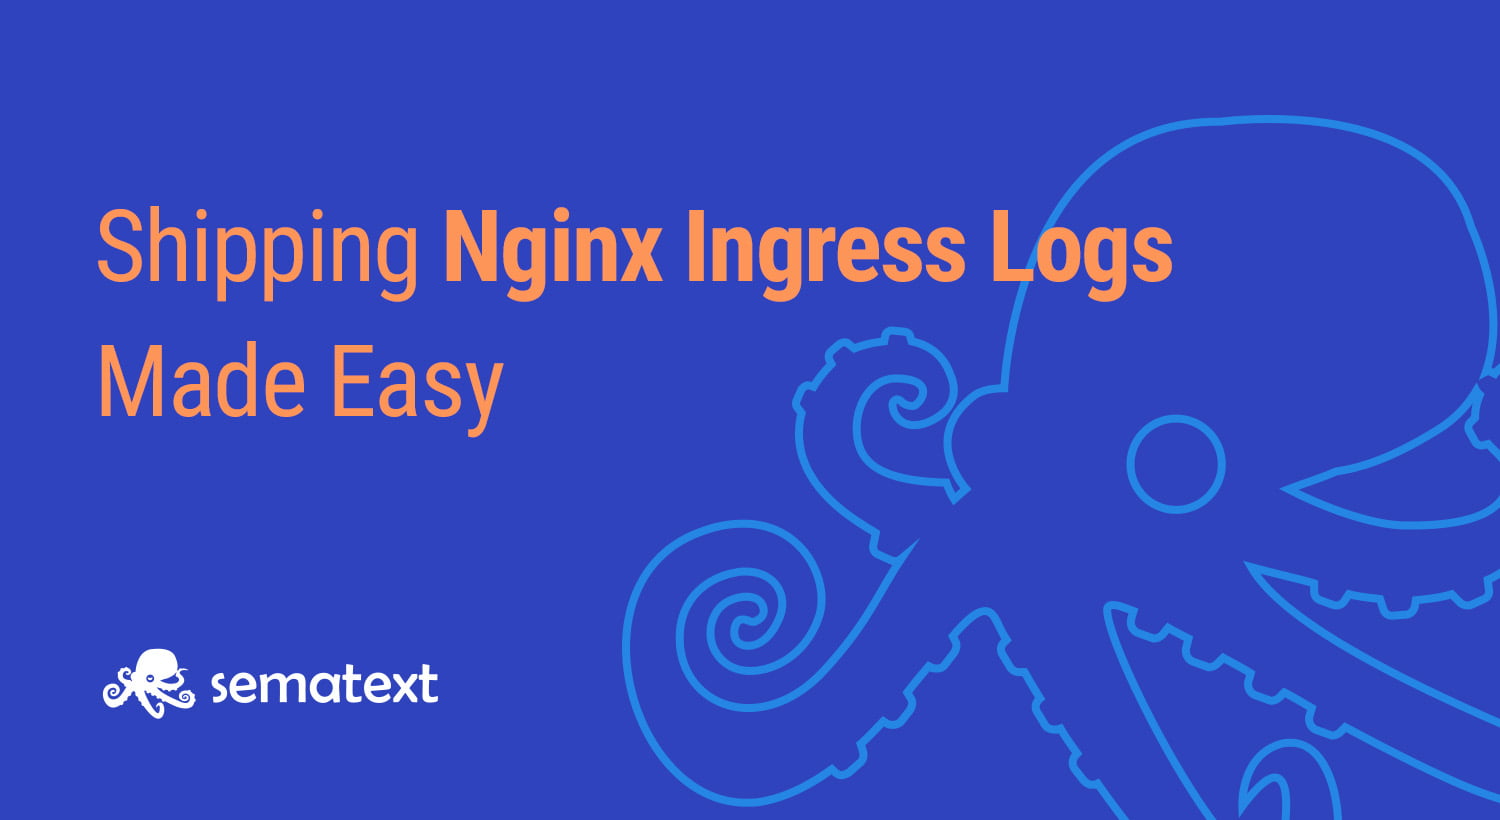 Shipping Nginx Ingress Logs made easy